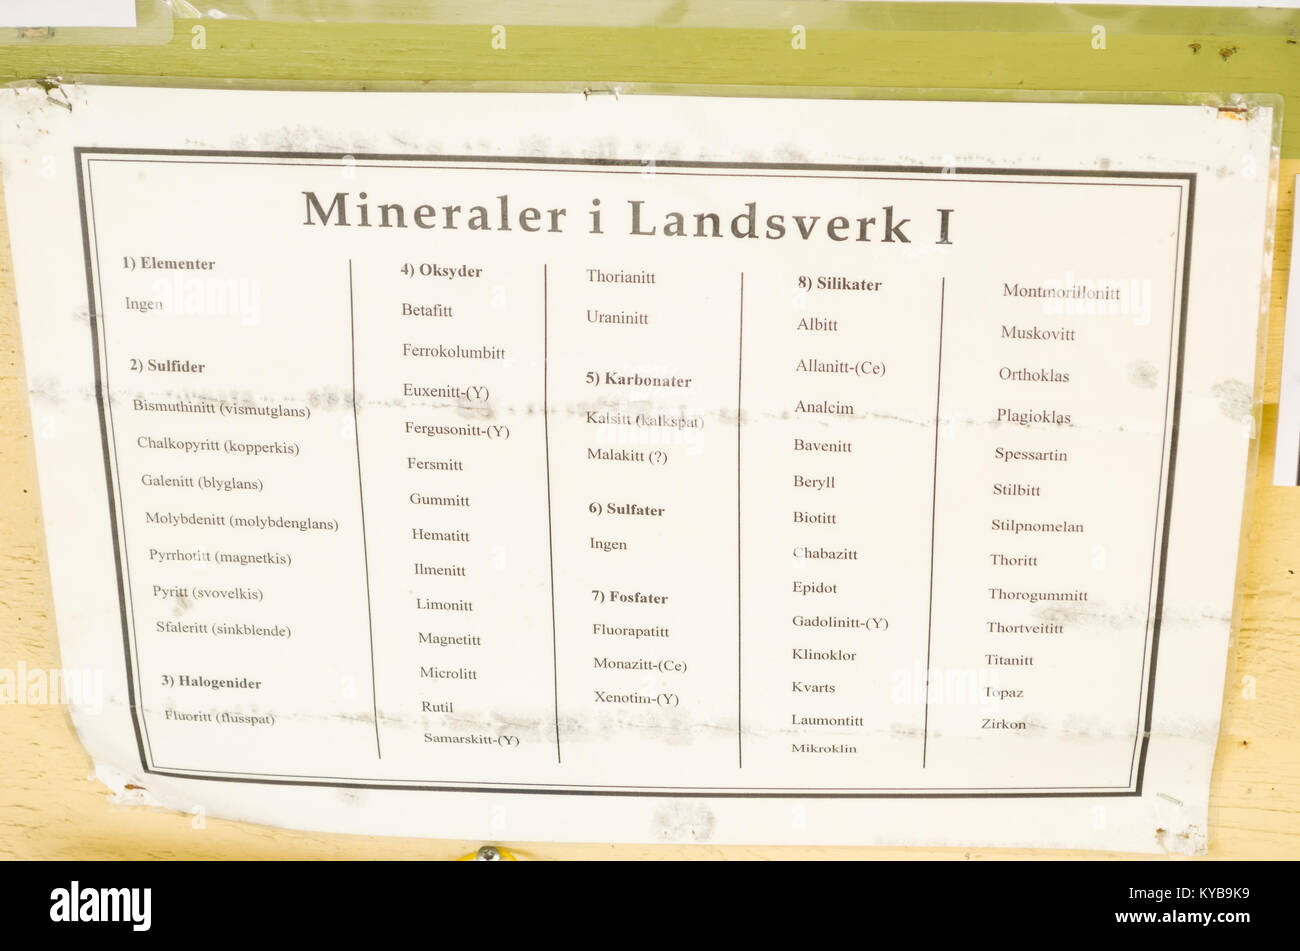 Longue liste de minéraux, vous vous trouvez sur Volvo 122 1 à Evje Mineralsti- mine de gemmes à la retraite et l'attraction touristique locale. Banque D'Images